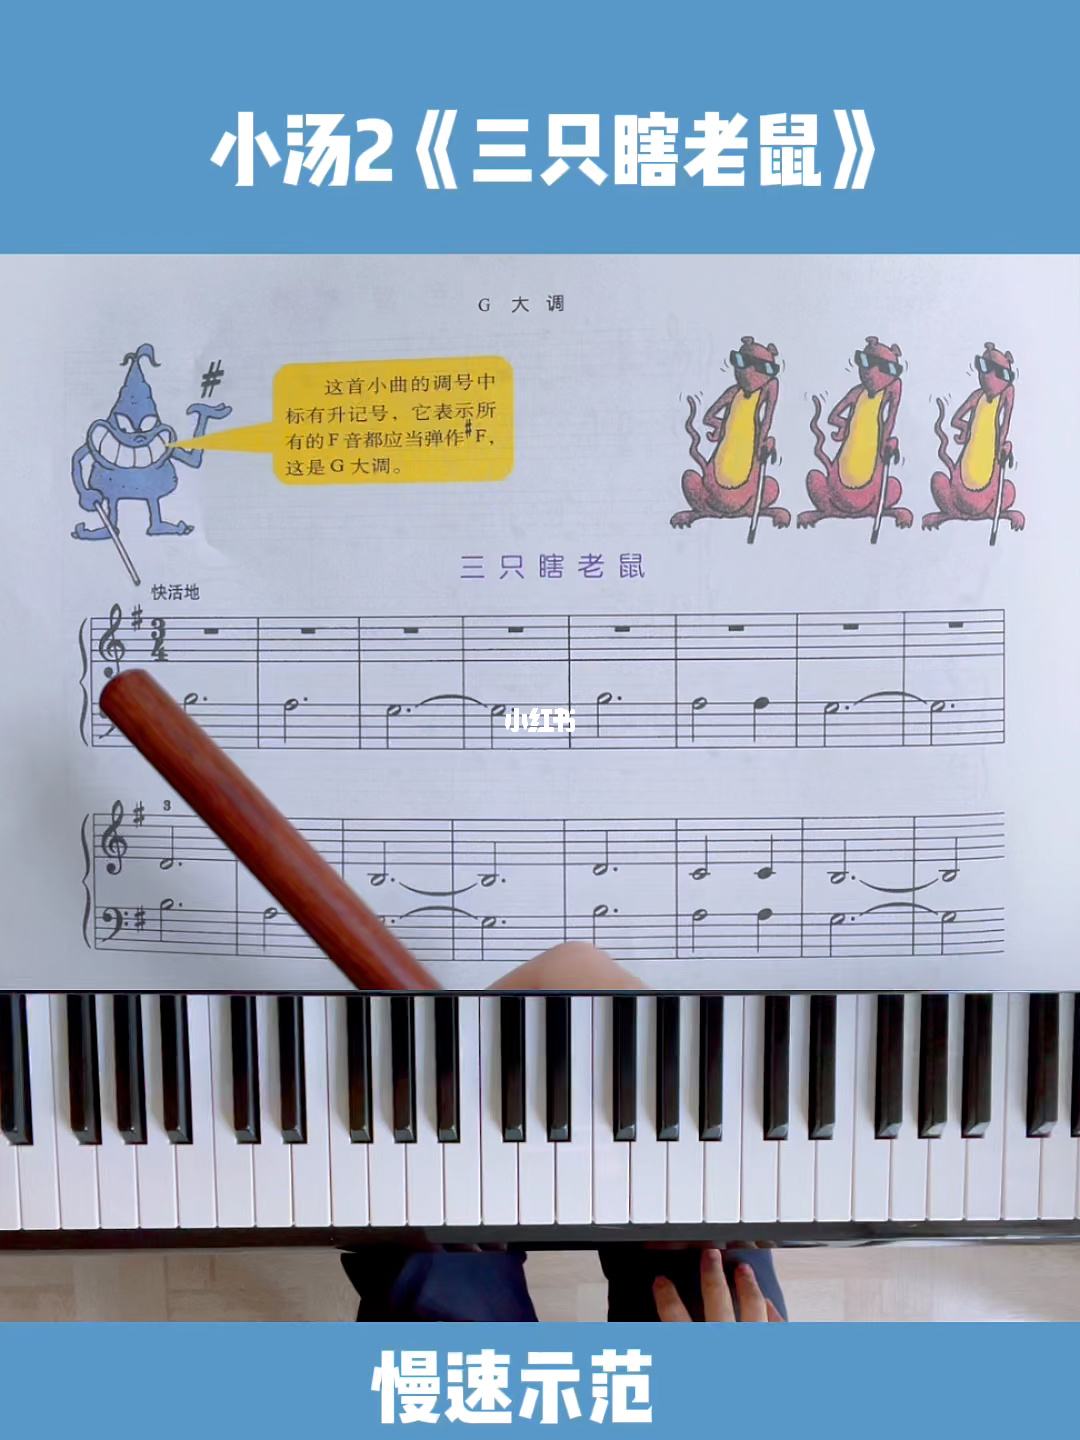 牛老师教钢琴小汤3(小汤三你好吗钢琴教学视频王老师)